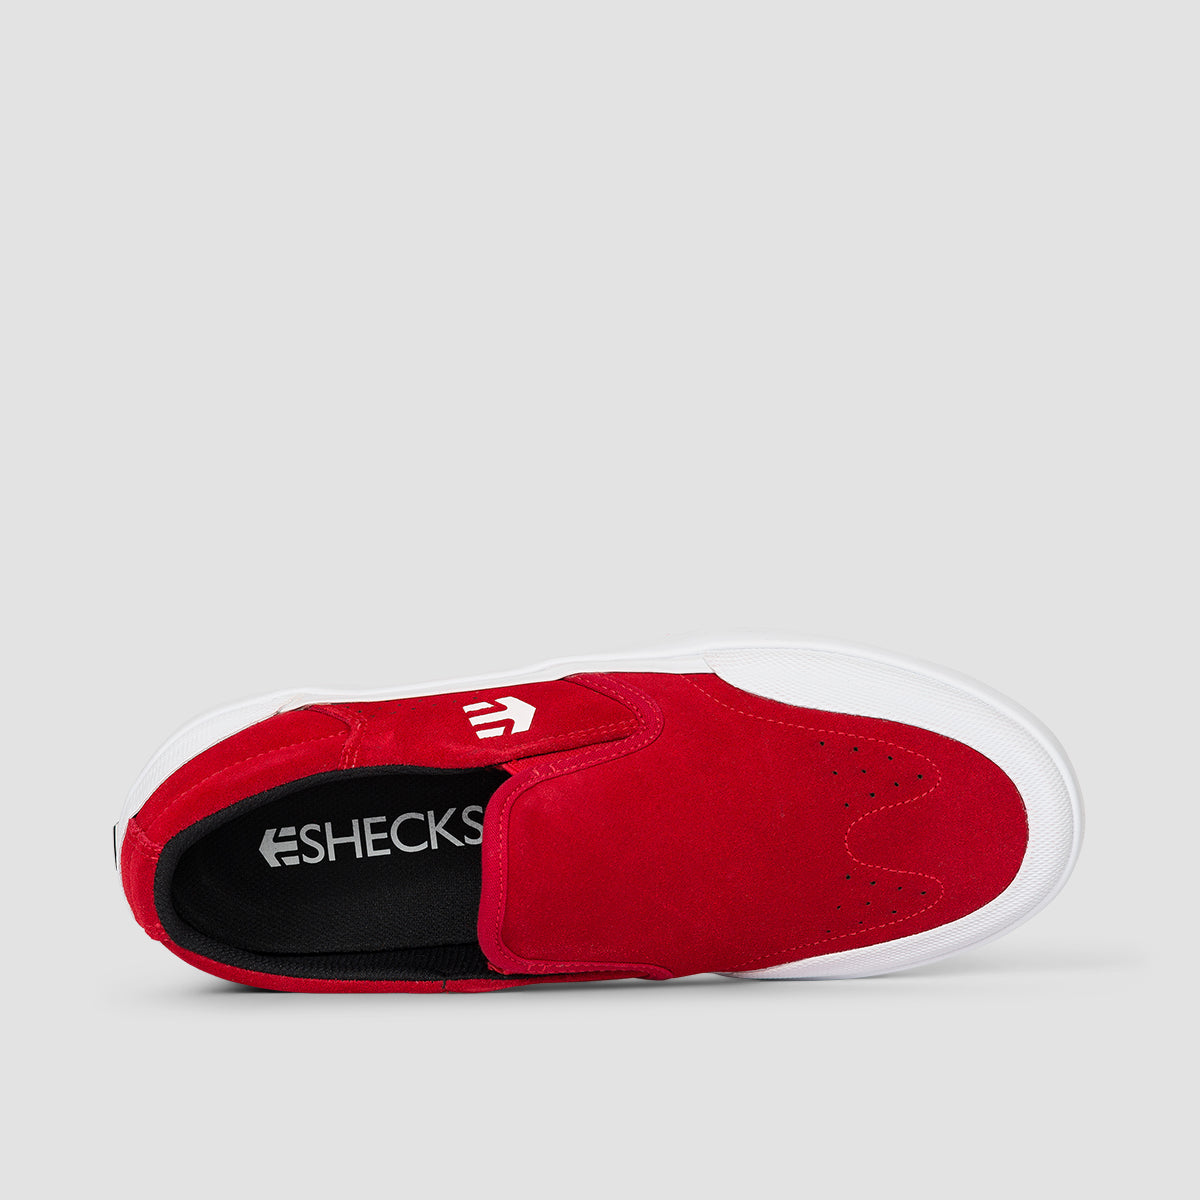 Etnies Marana Slip XLT Shoes - Red/White